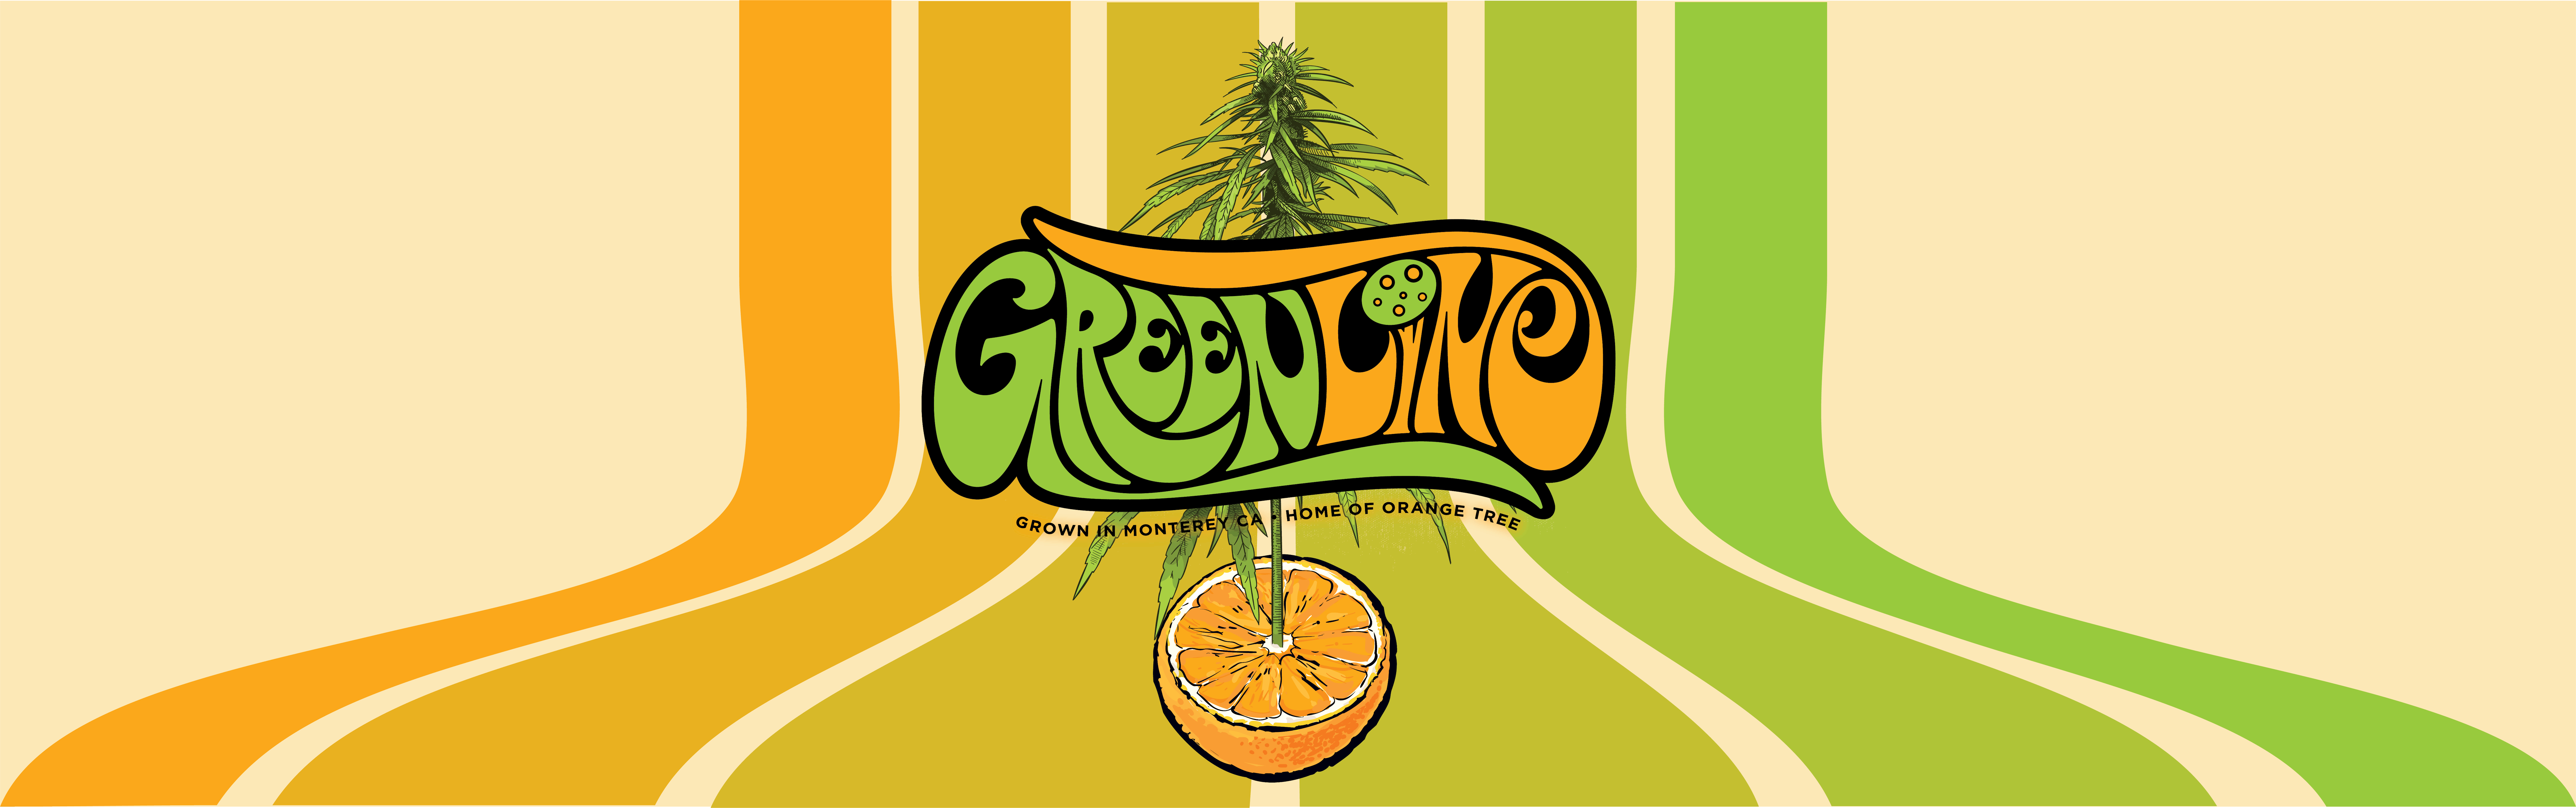 Greenline banner